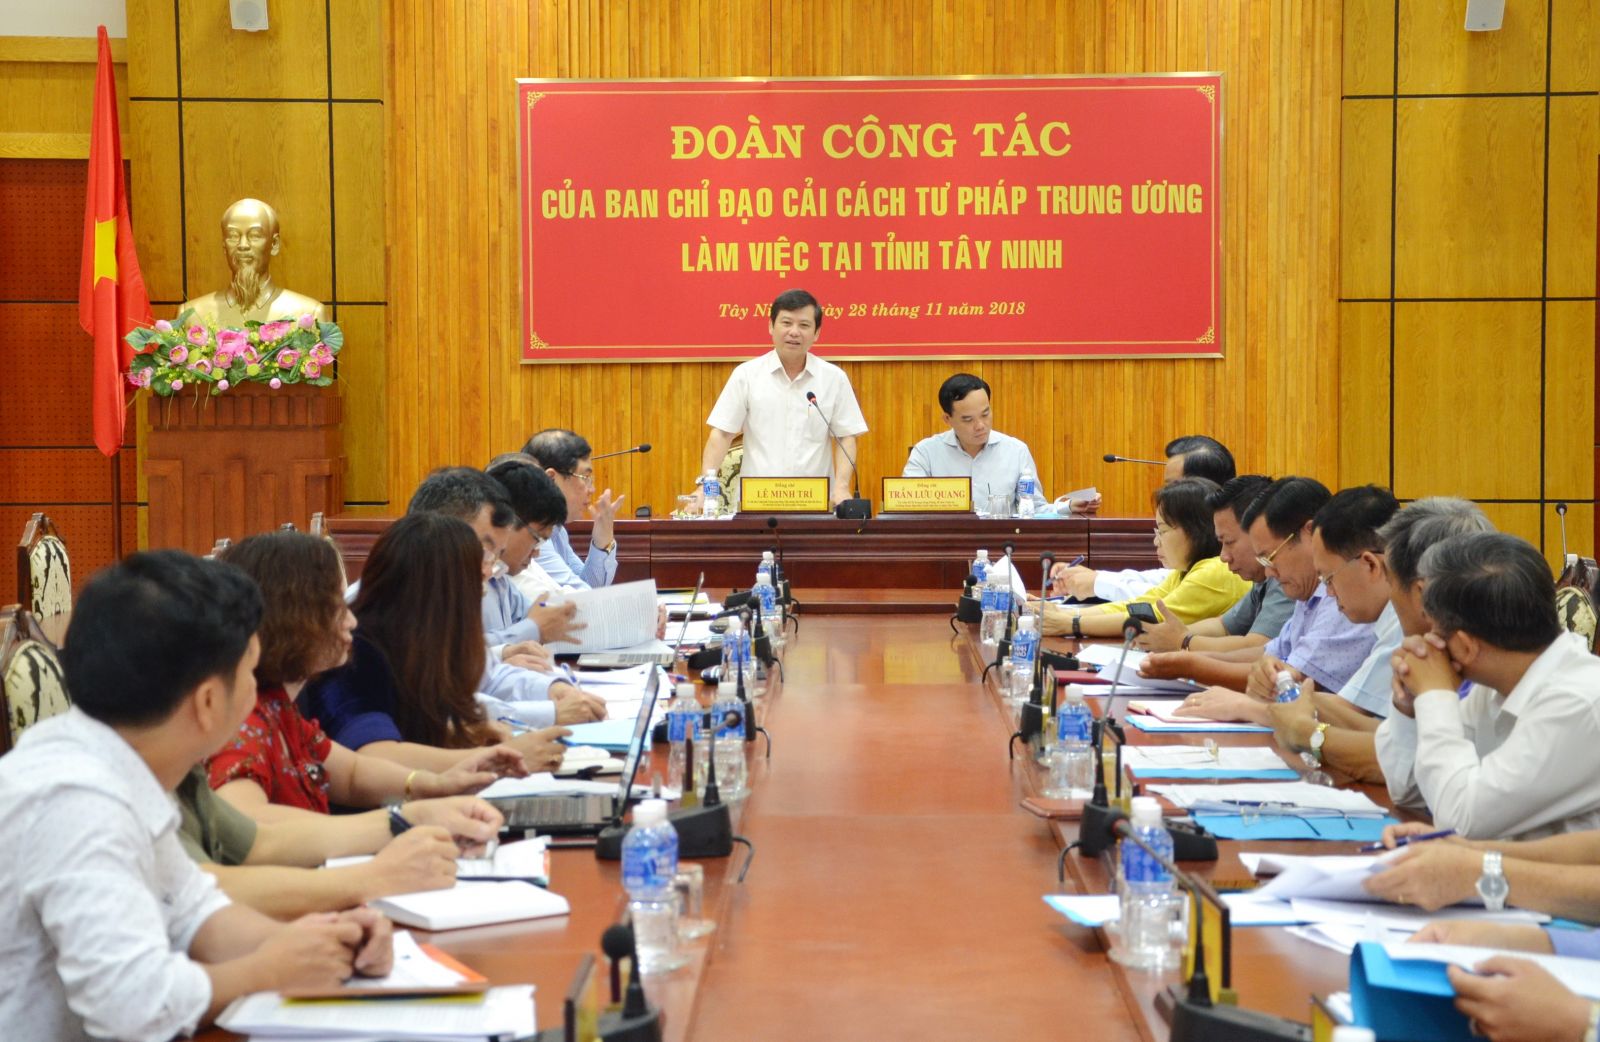 Đoàn công tác của Ban Chỉ đạo cải cách tư pháp Trung ương làm việc với Ban Chỉ đạo cải cách tư pháp tỉnh Tây Ninh 